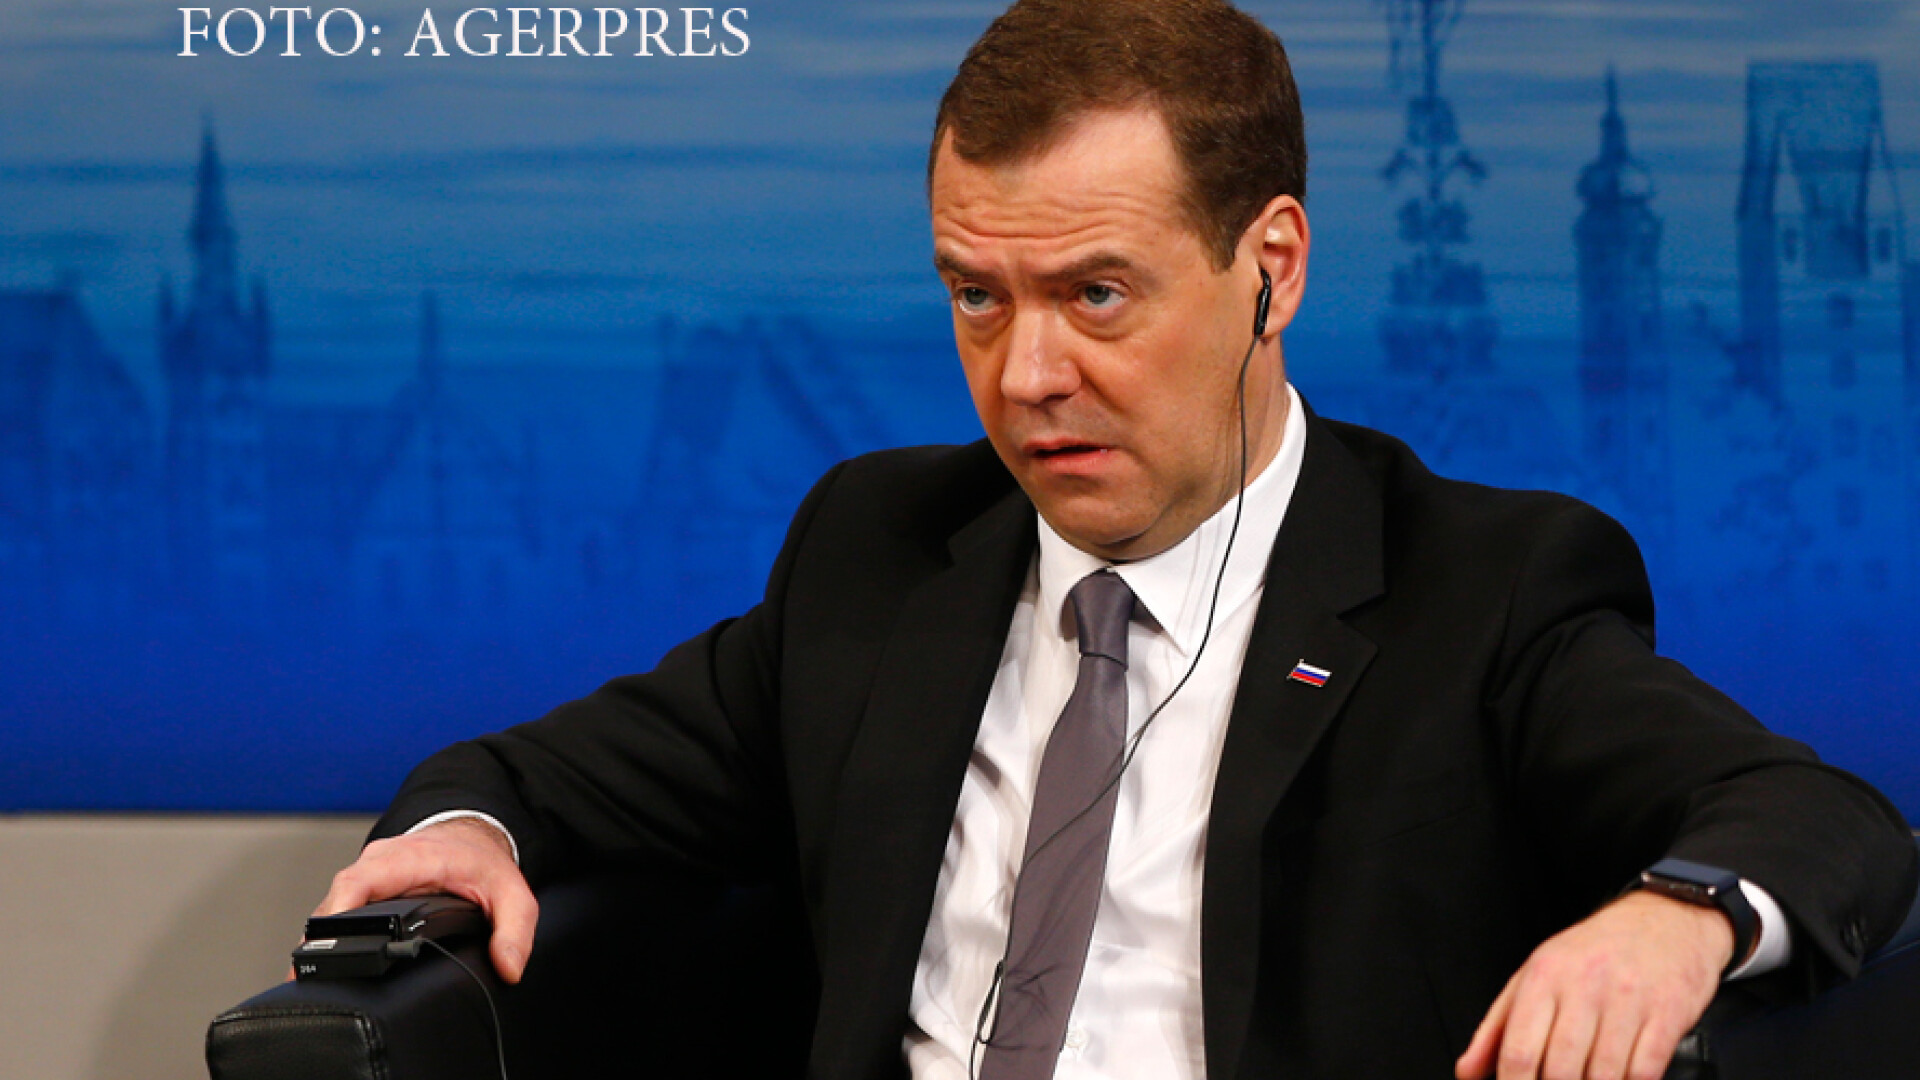 Dmitri Medvedev la Conferinta de Securitate de la Munchen